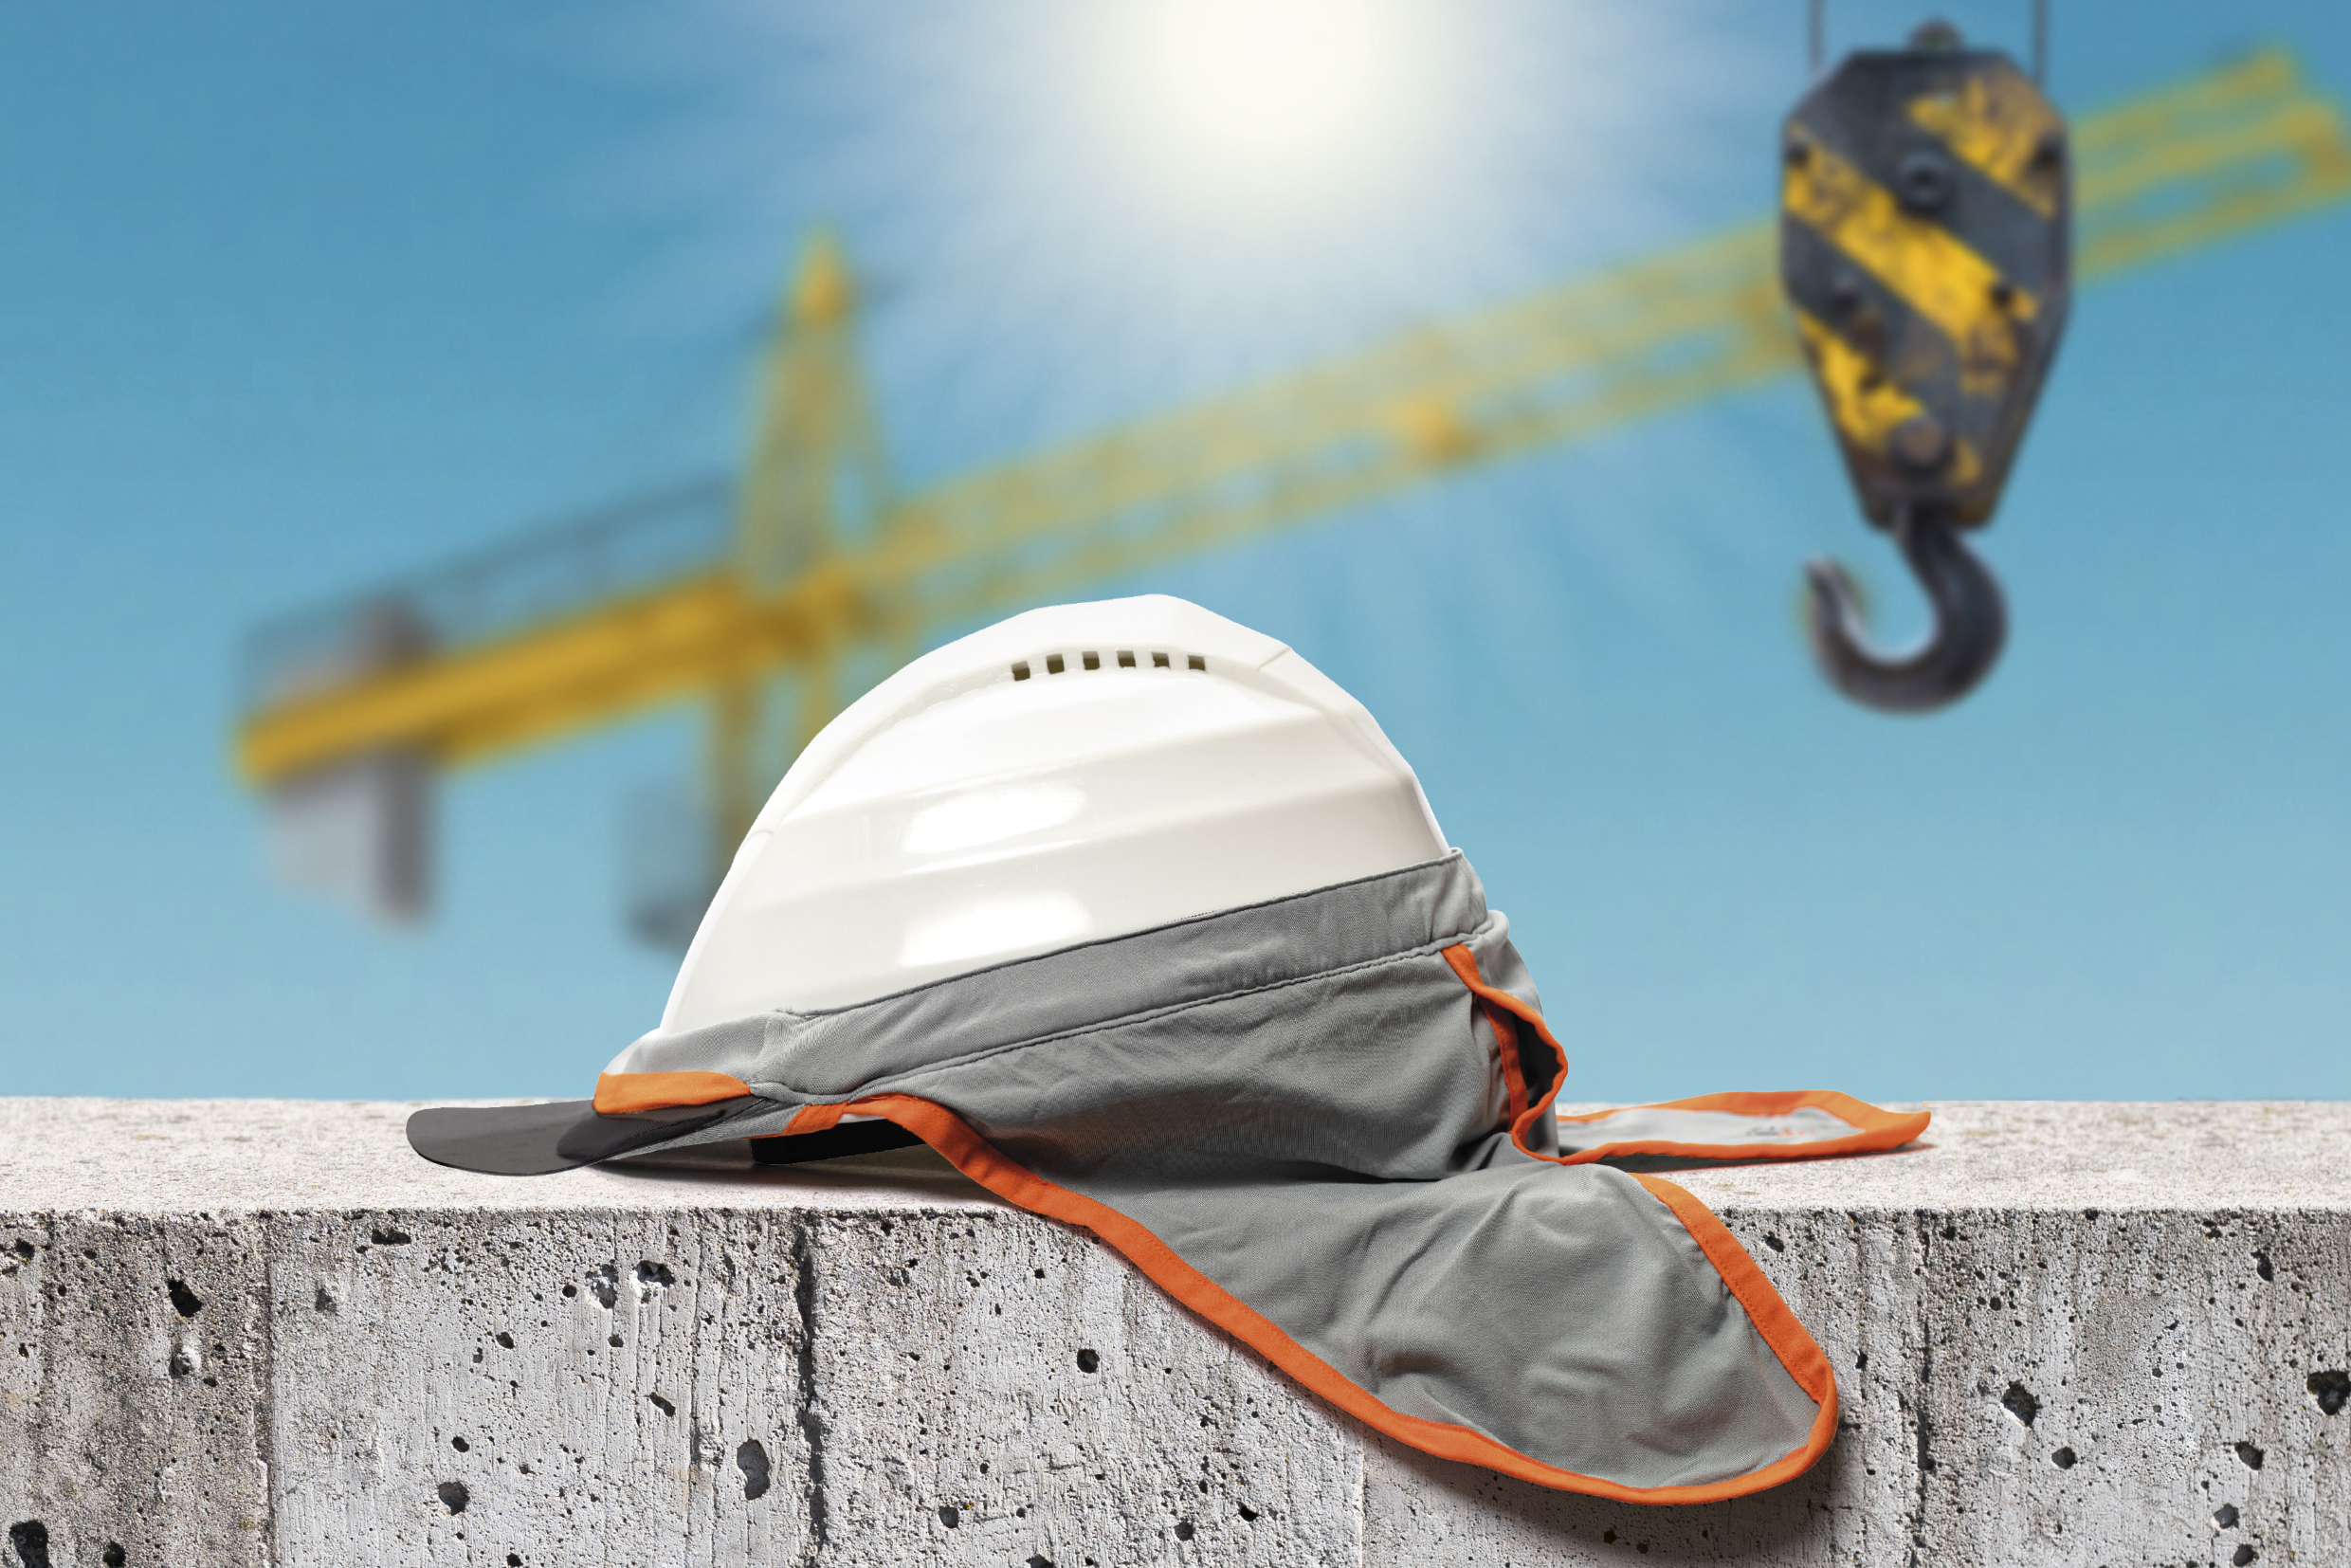 Casques de sécurité, casques de chantier et casquettes de protection 